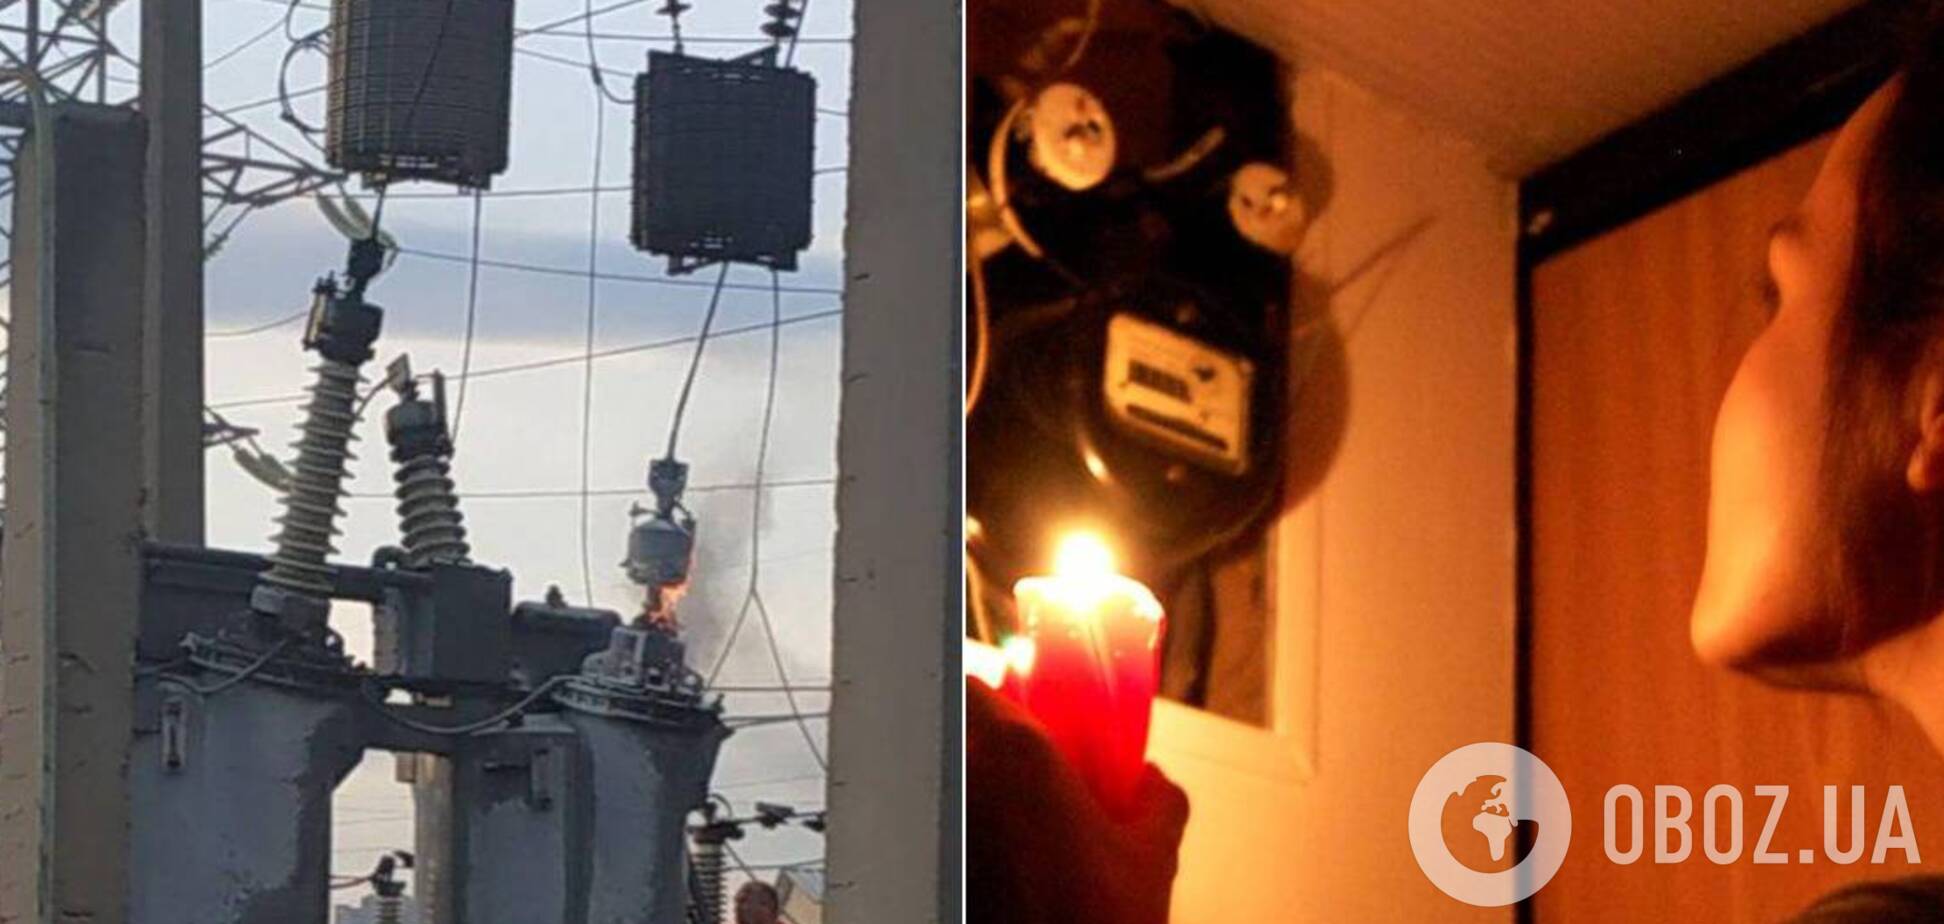 Увечері 27 липня в центрі Києва почалися перебої з електрикою